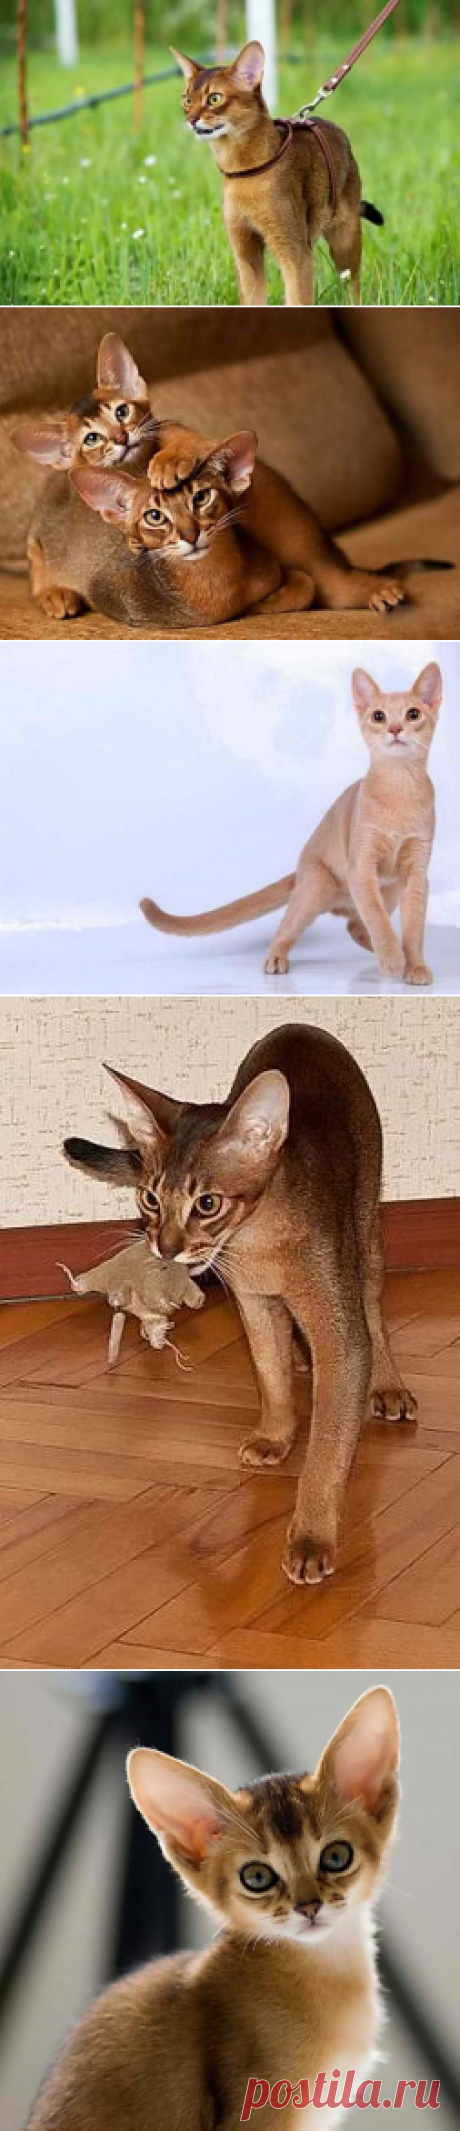 Абиссинская кошка, обзор породы, особенности характера и поведения, фото окрасов